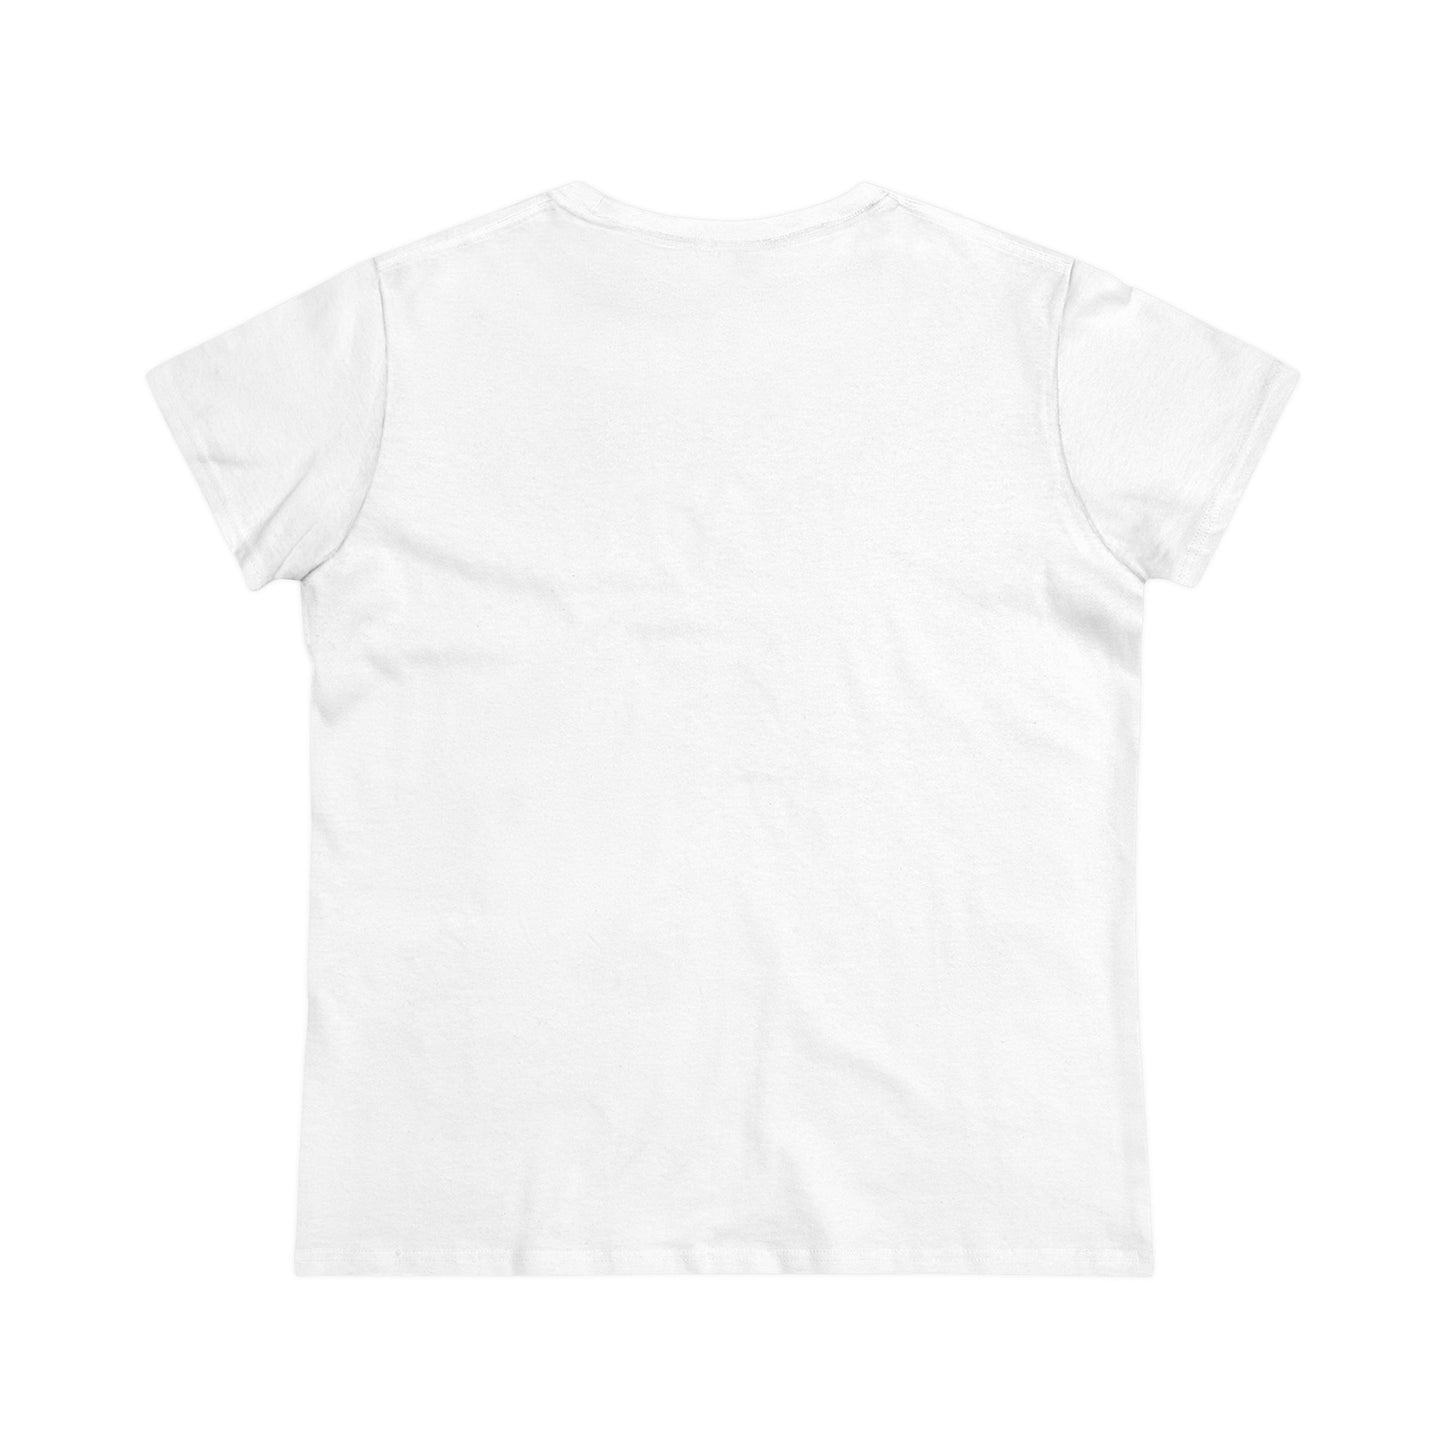 Boutique - Color Building & Map -  Ladies Midweight Cotton T-Shirt